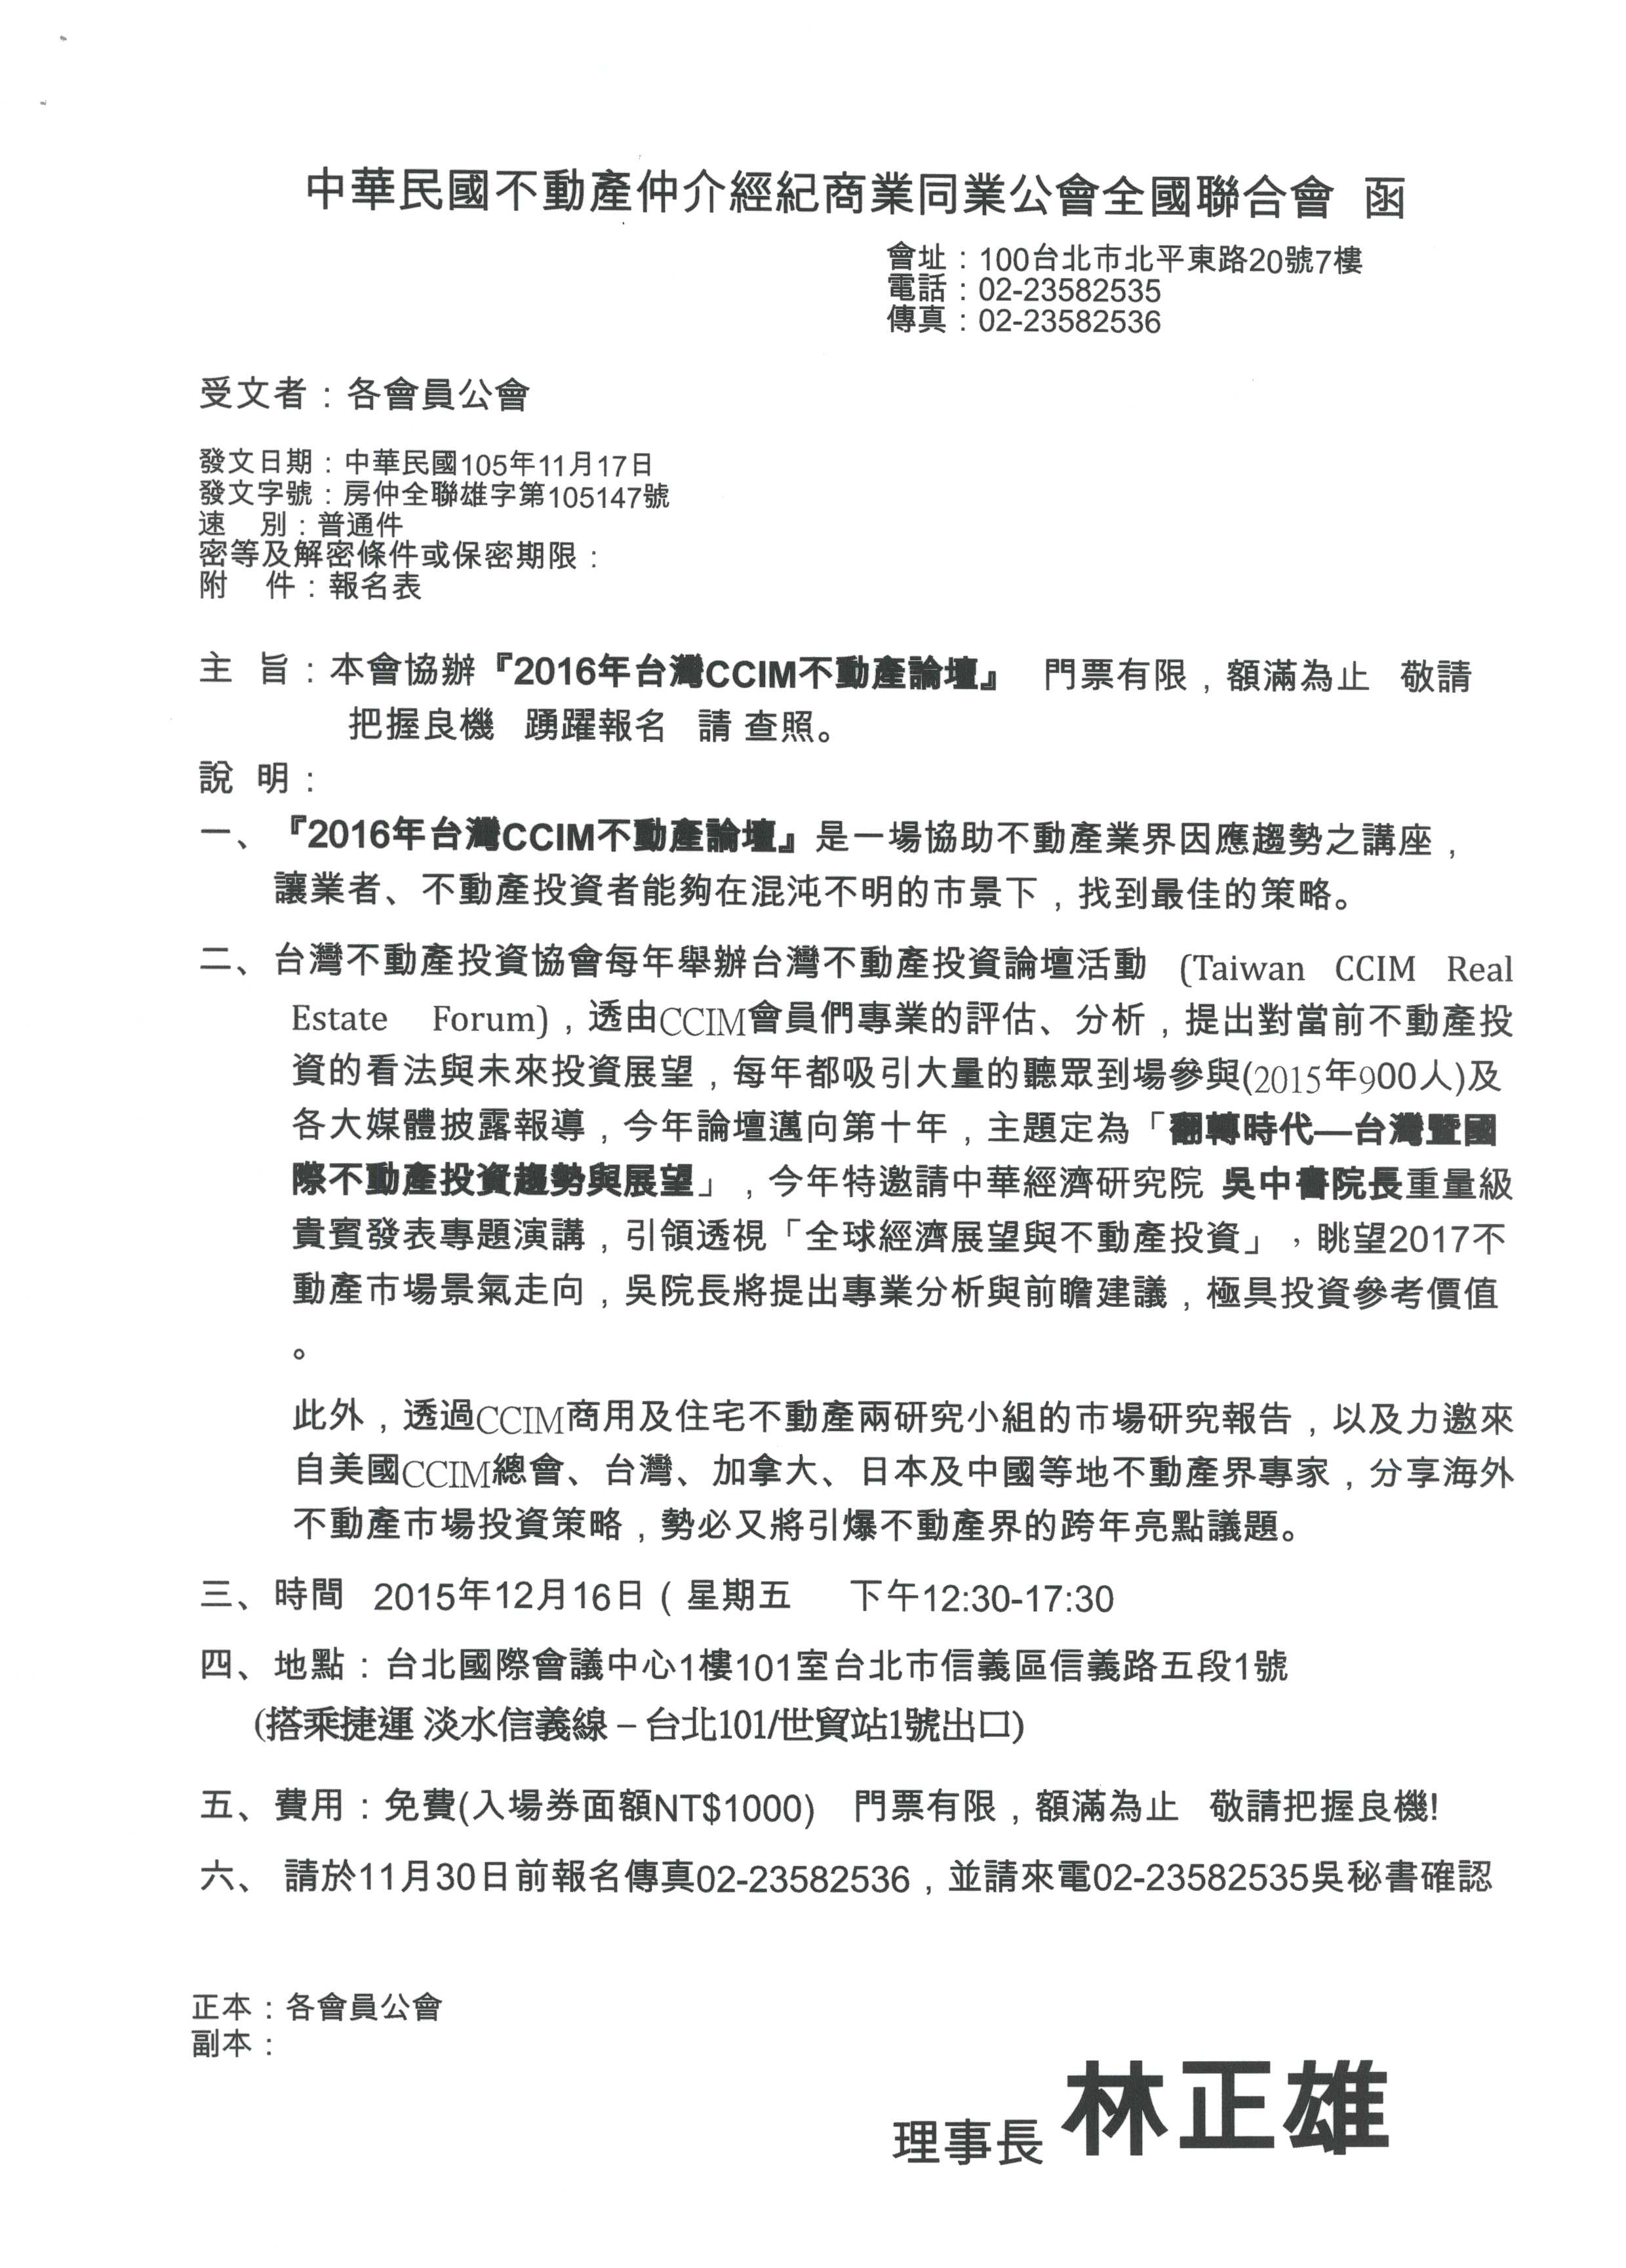 本會協辦「2016年台灣CCIM不動產論壇」門票有限額滿為止，敬請把握良機踴躍報名。